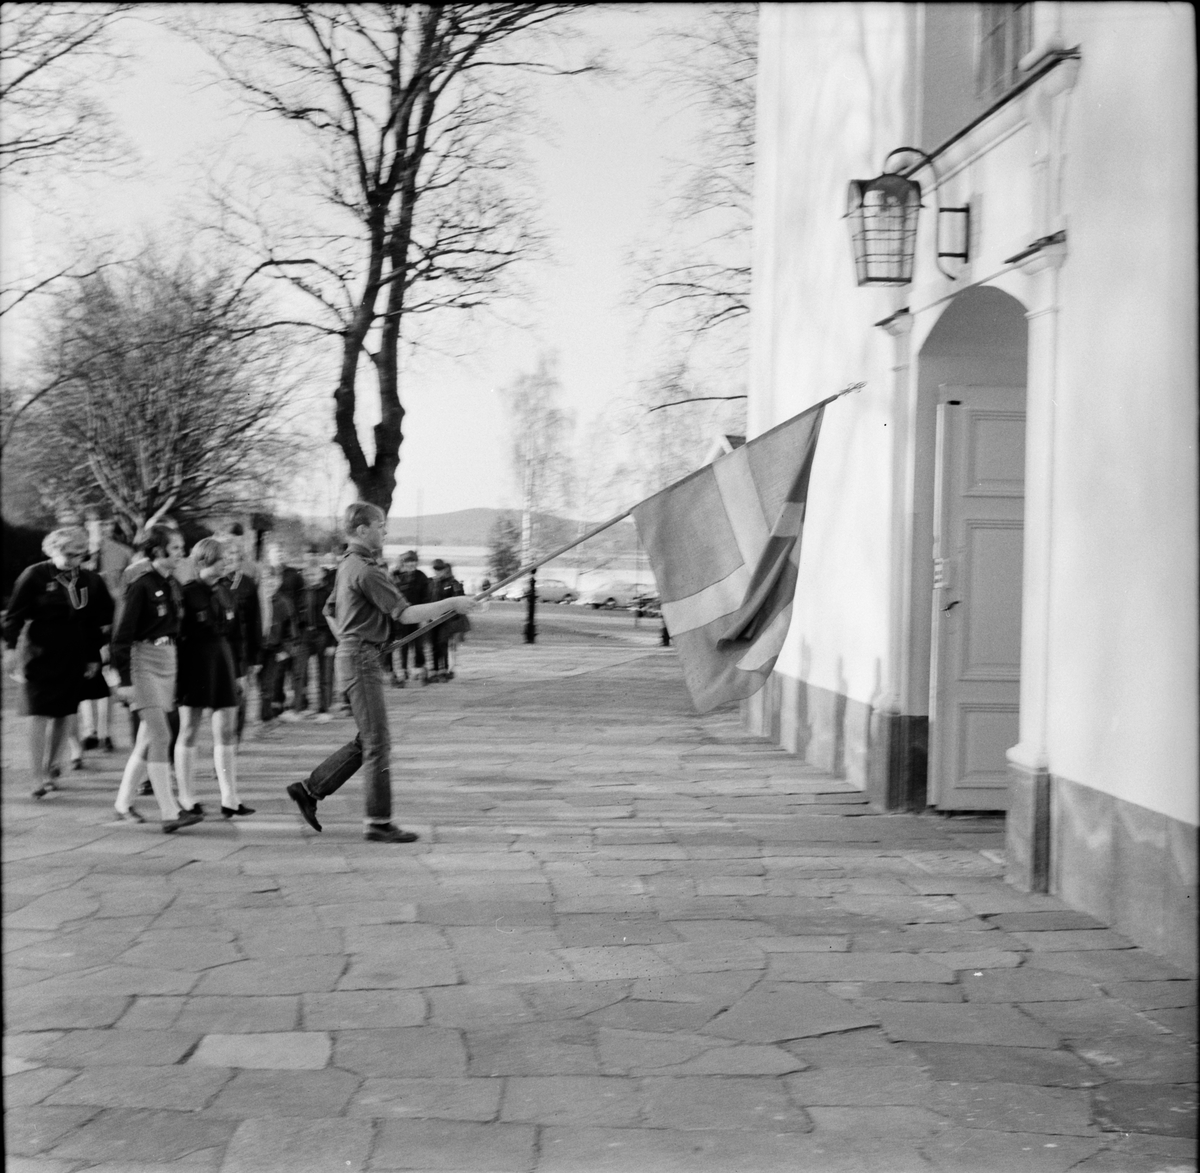 Arbrå,
Scoutupptagning i kyrkan,
21 April 1968